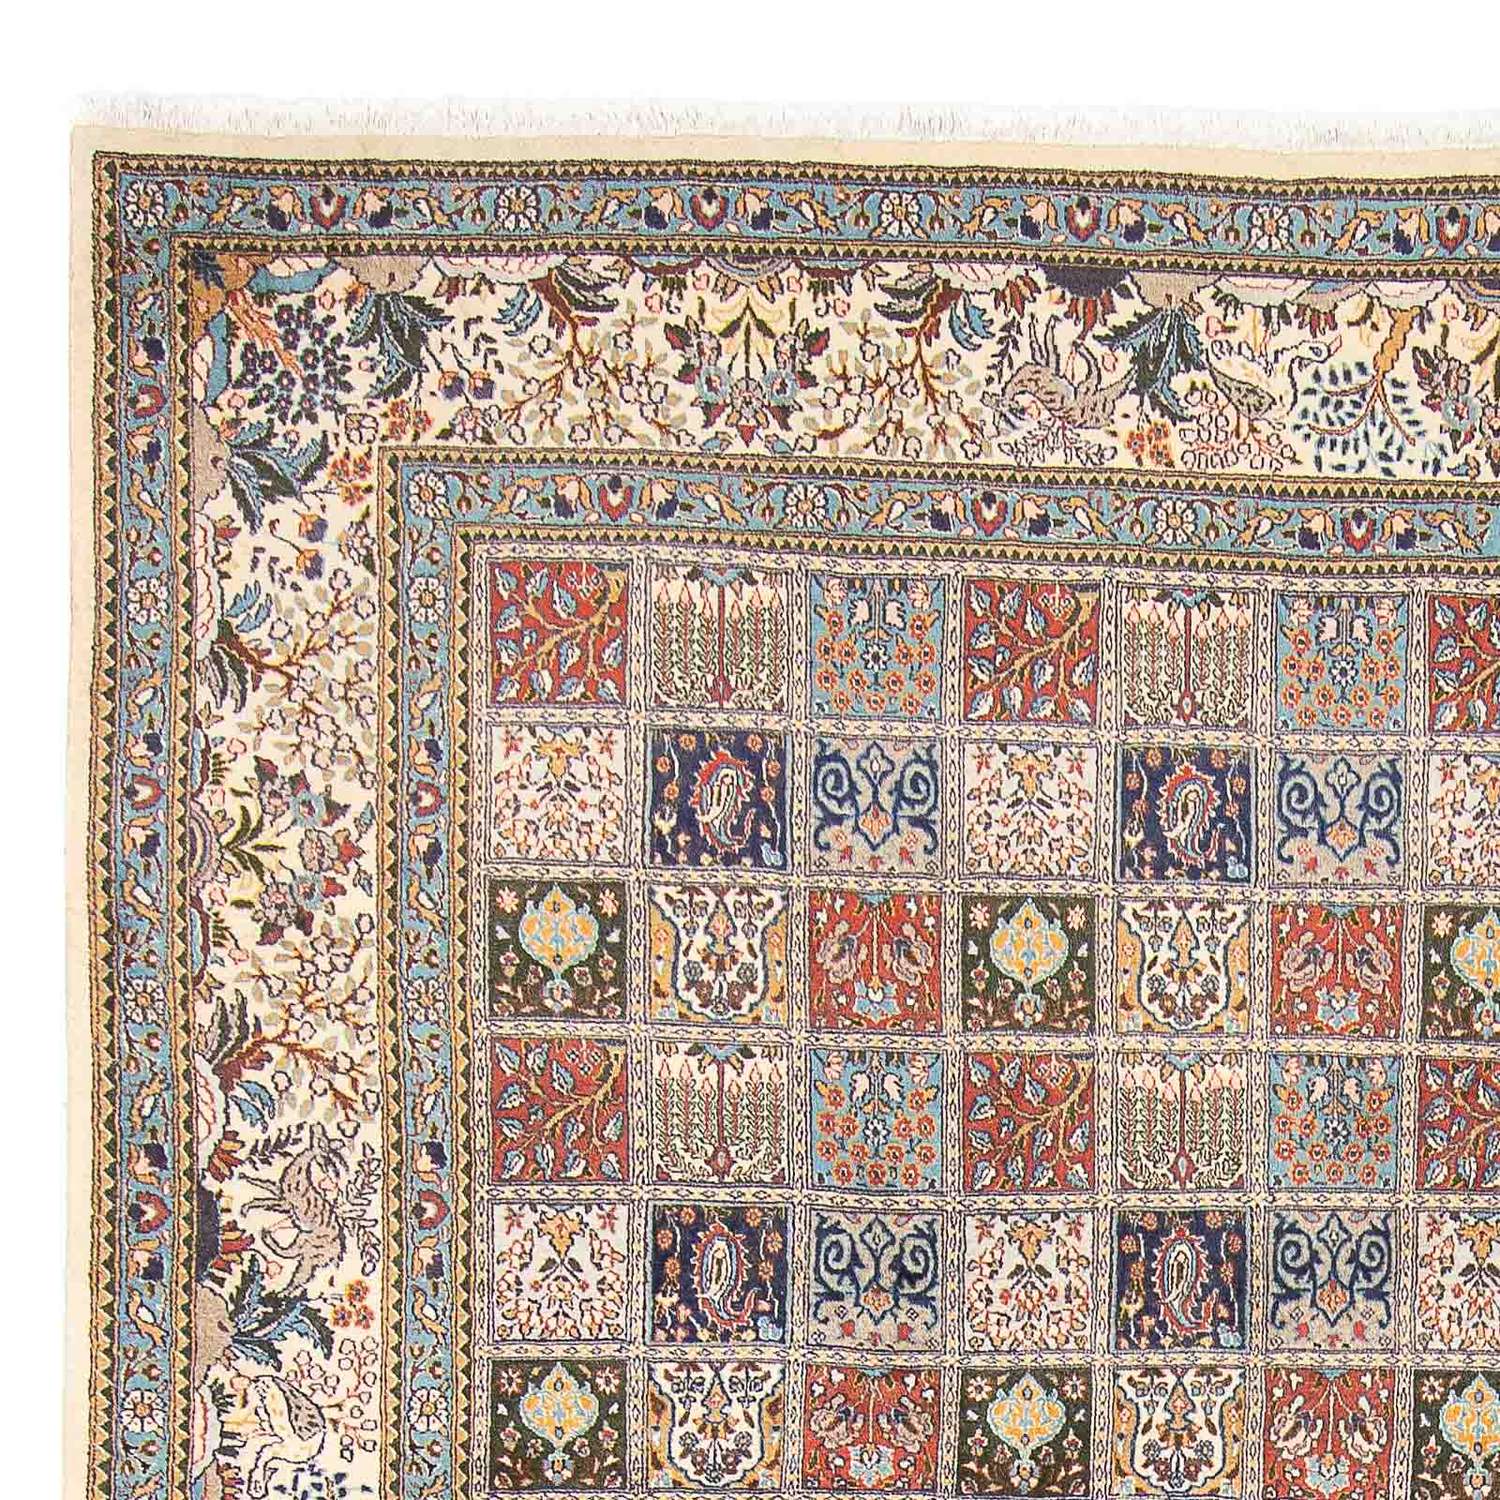 Tapis persan - Classique - 400 x 300 cm - multicolore